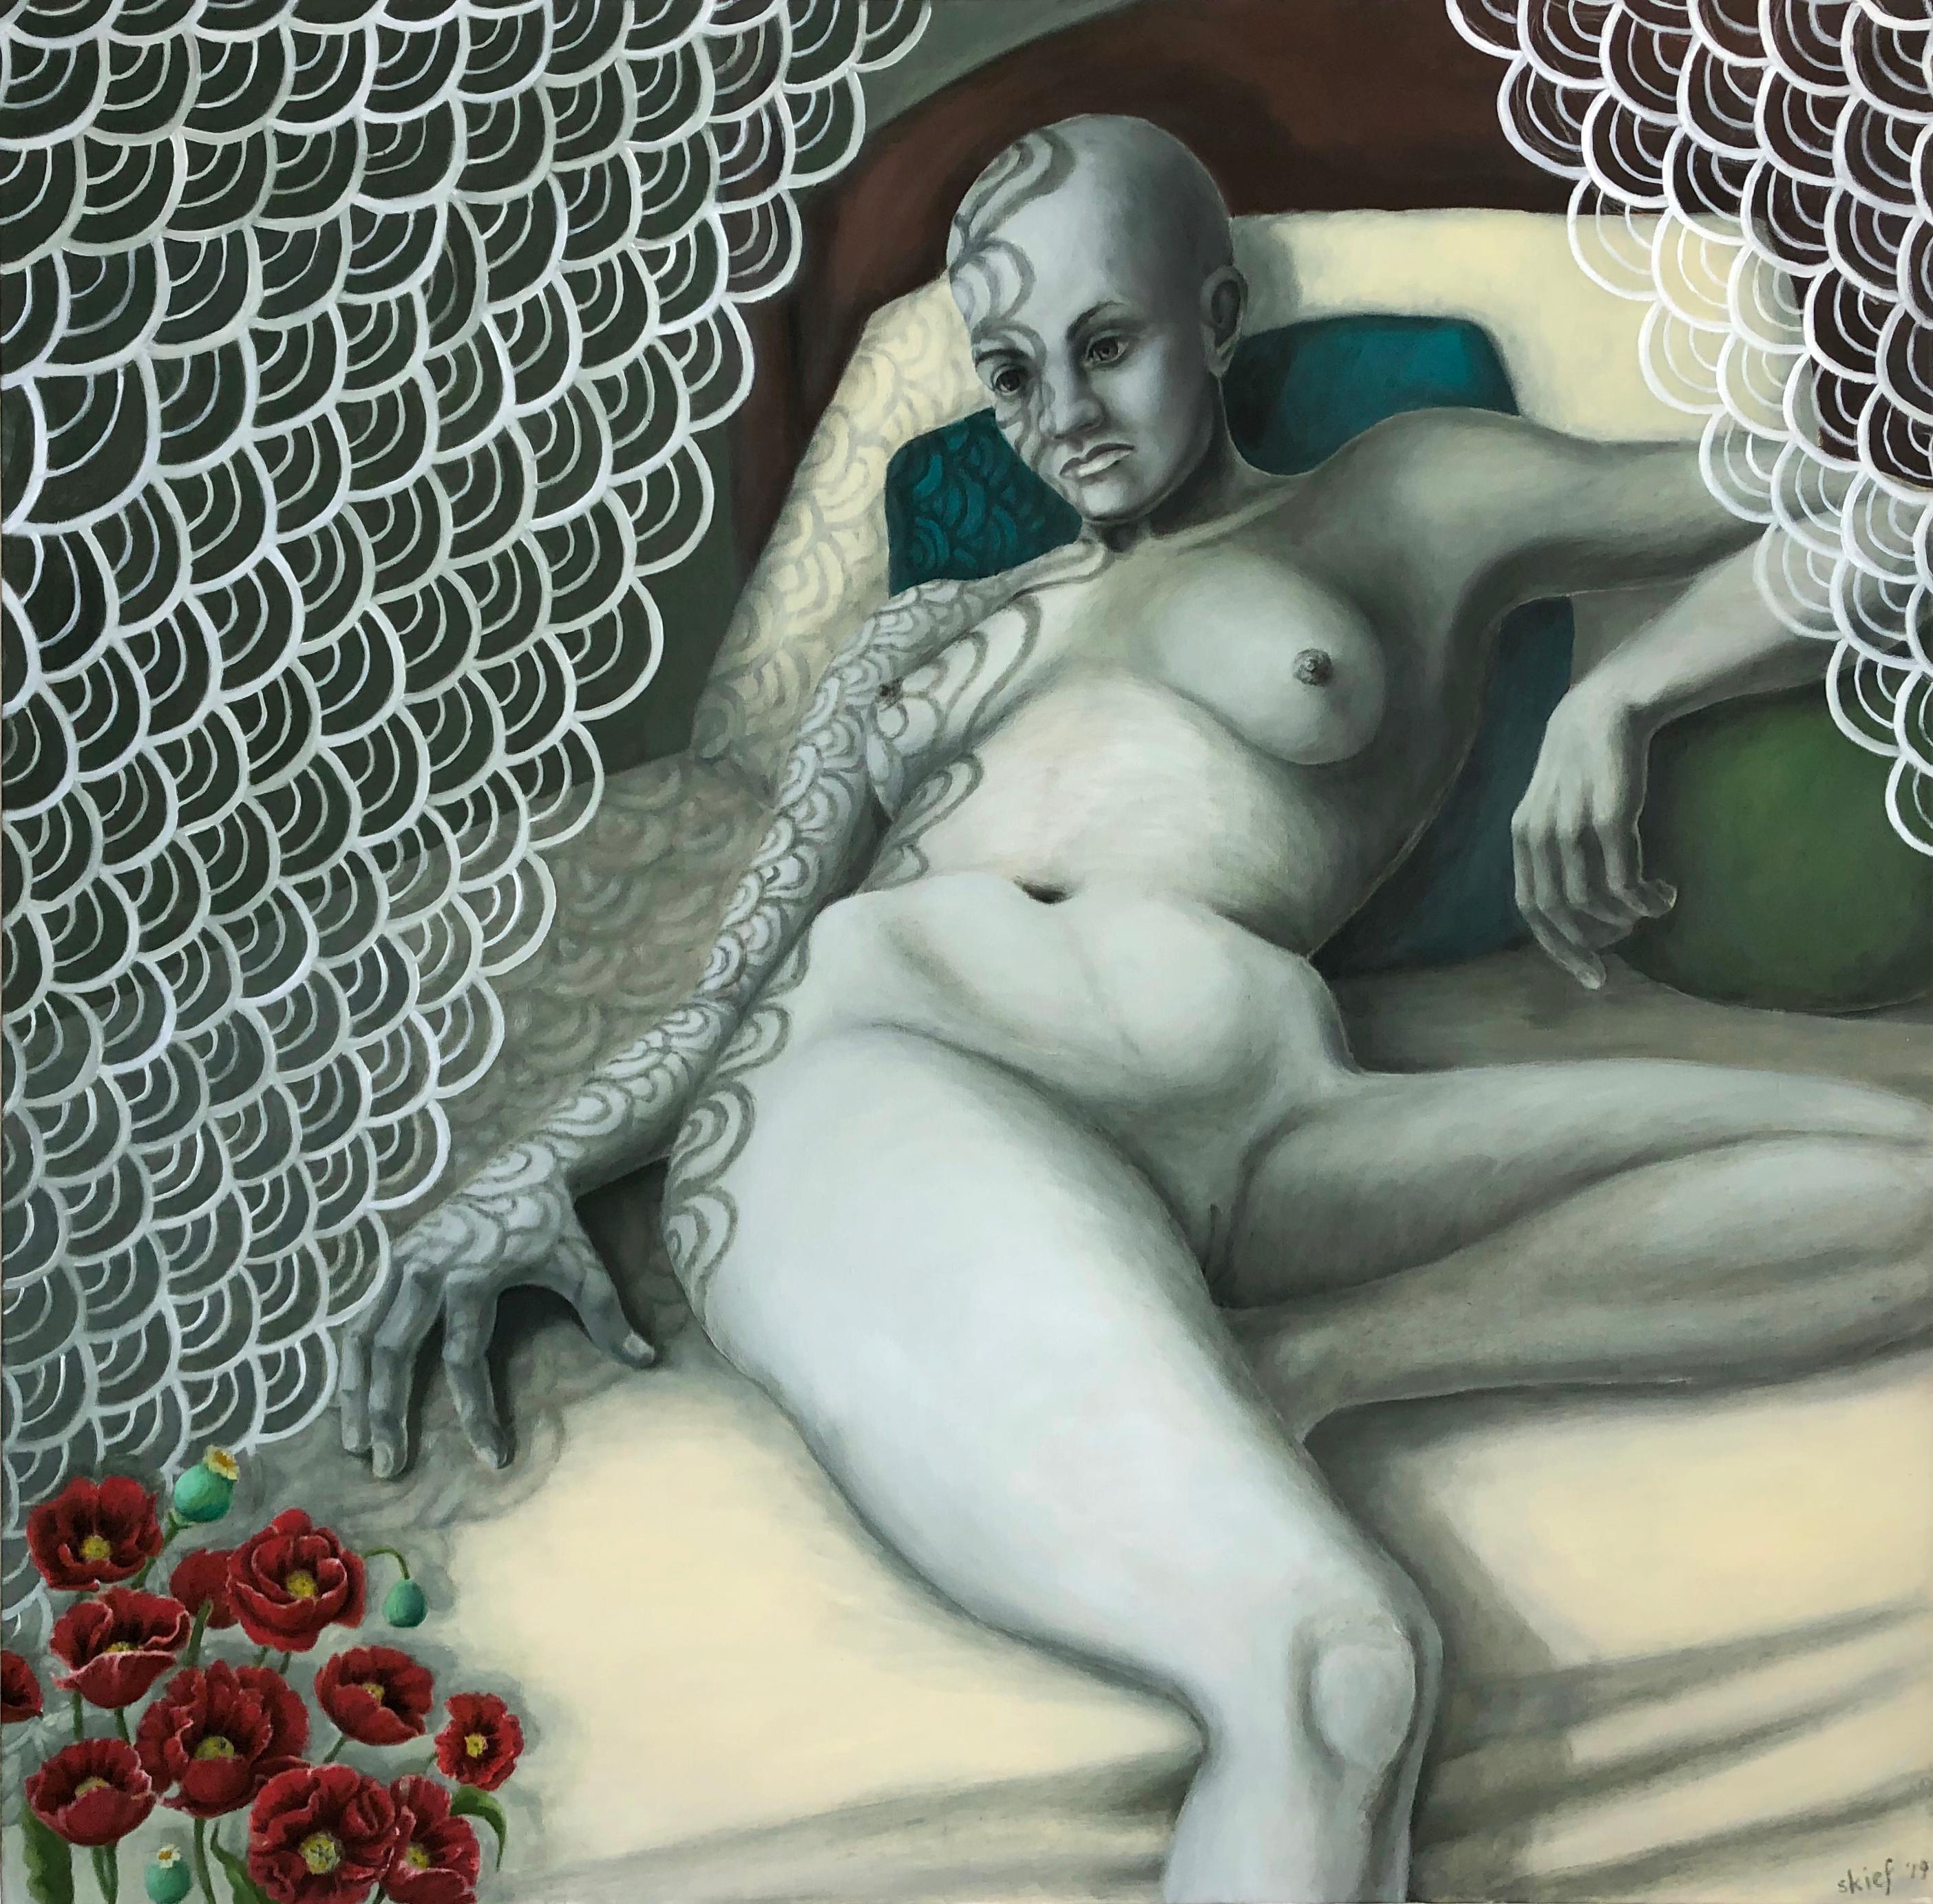 Aphrodite ( Amazone nach dem Krieg) – Painting von Susan Kiefer